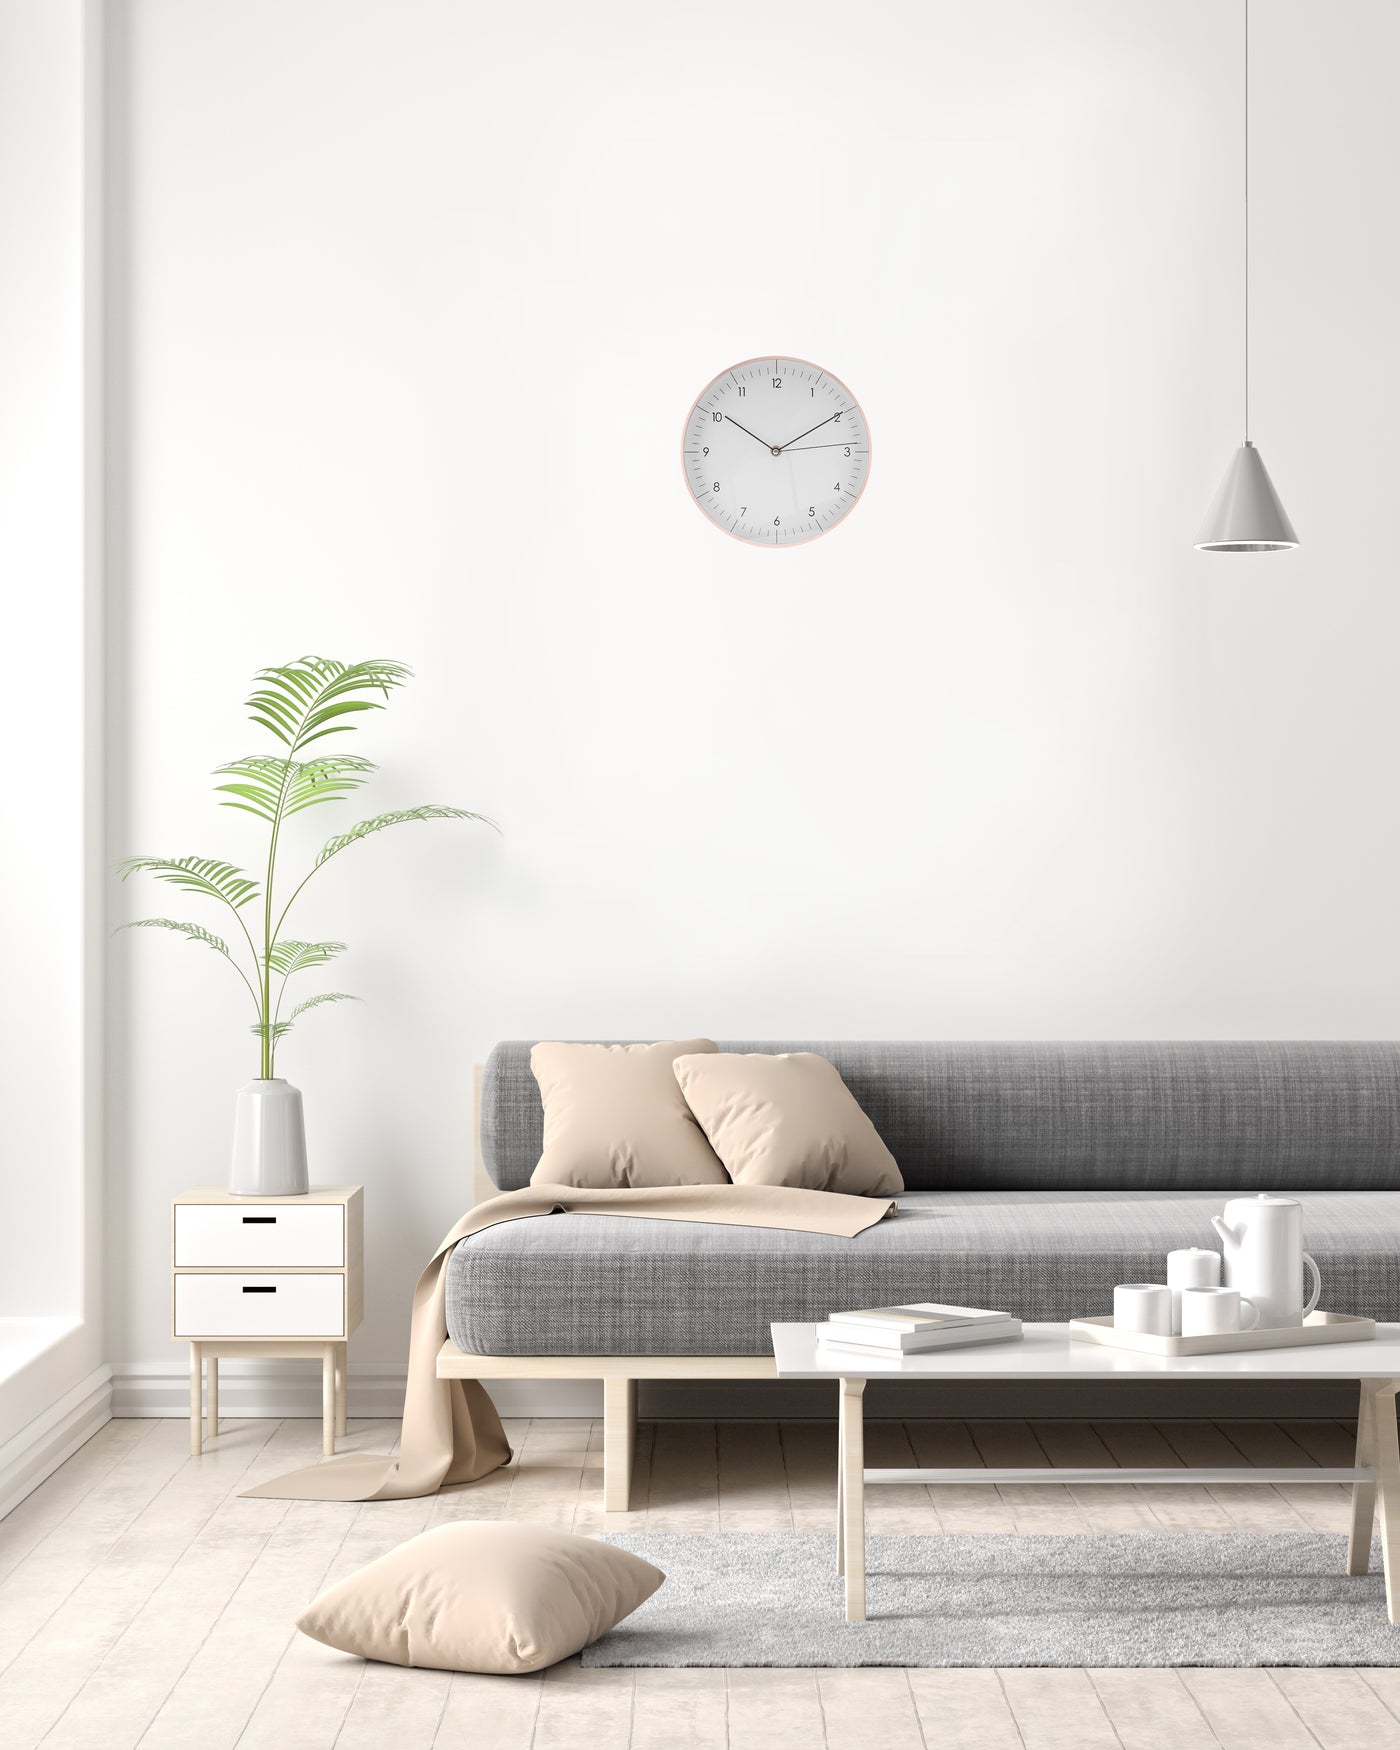 Große Wanduhr in weiss und rosegold hängt im Wohnzimmer über grauer Couch und Beistelltisch mit Vase 